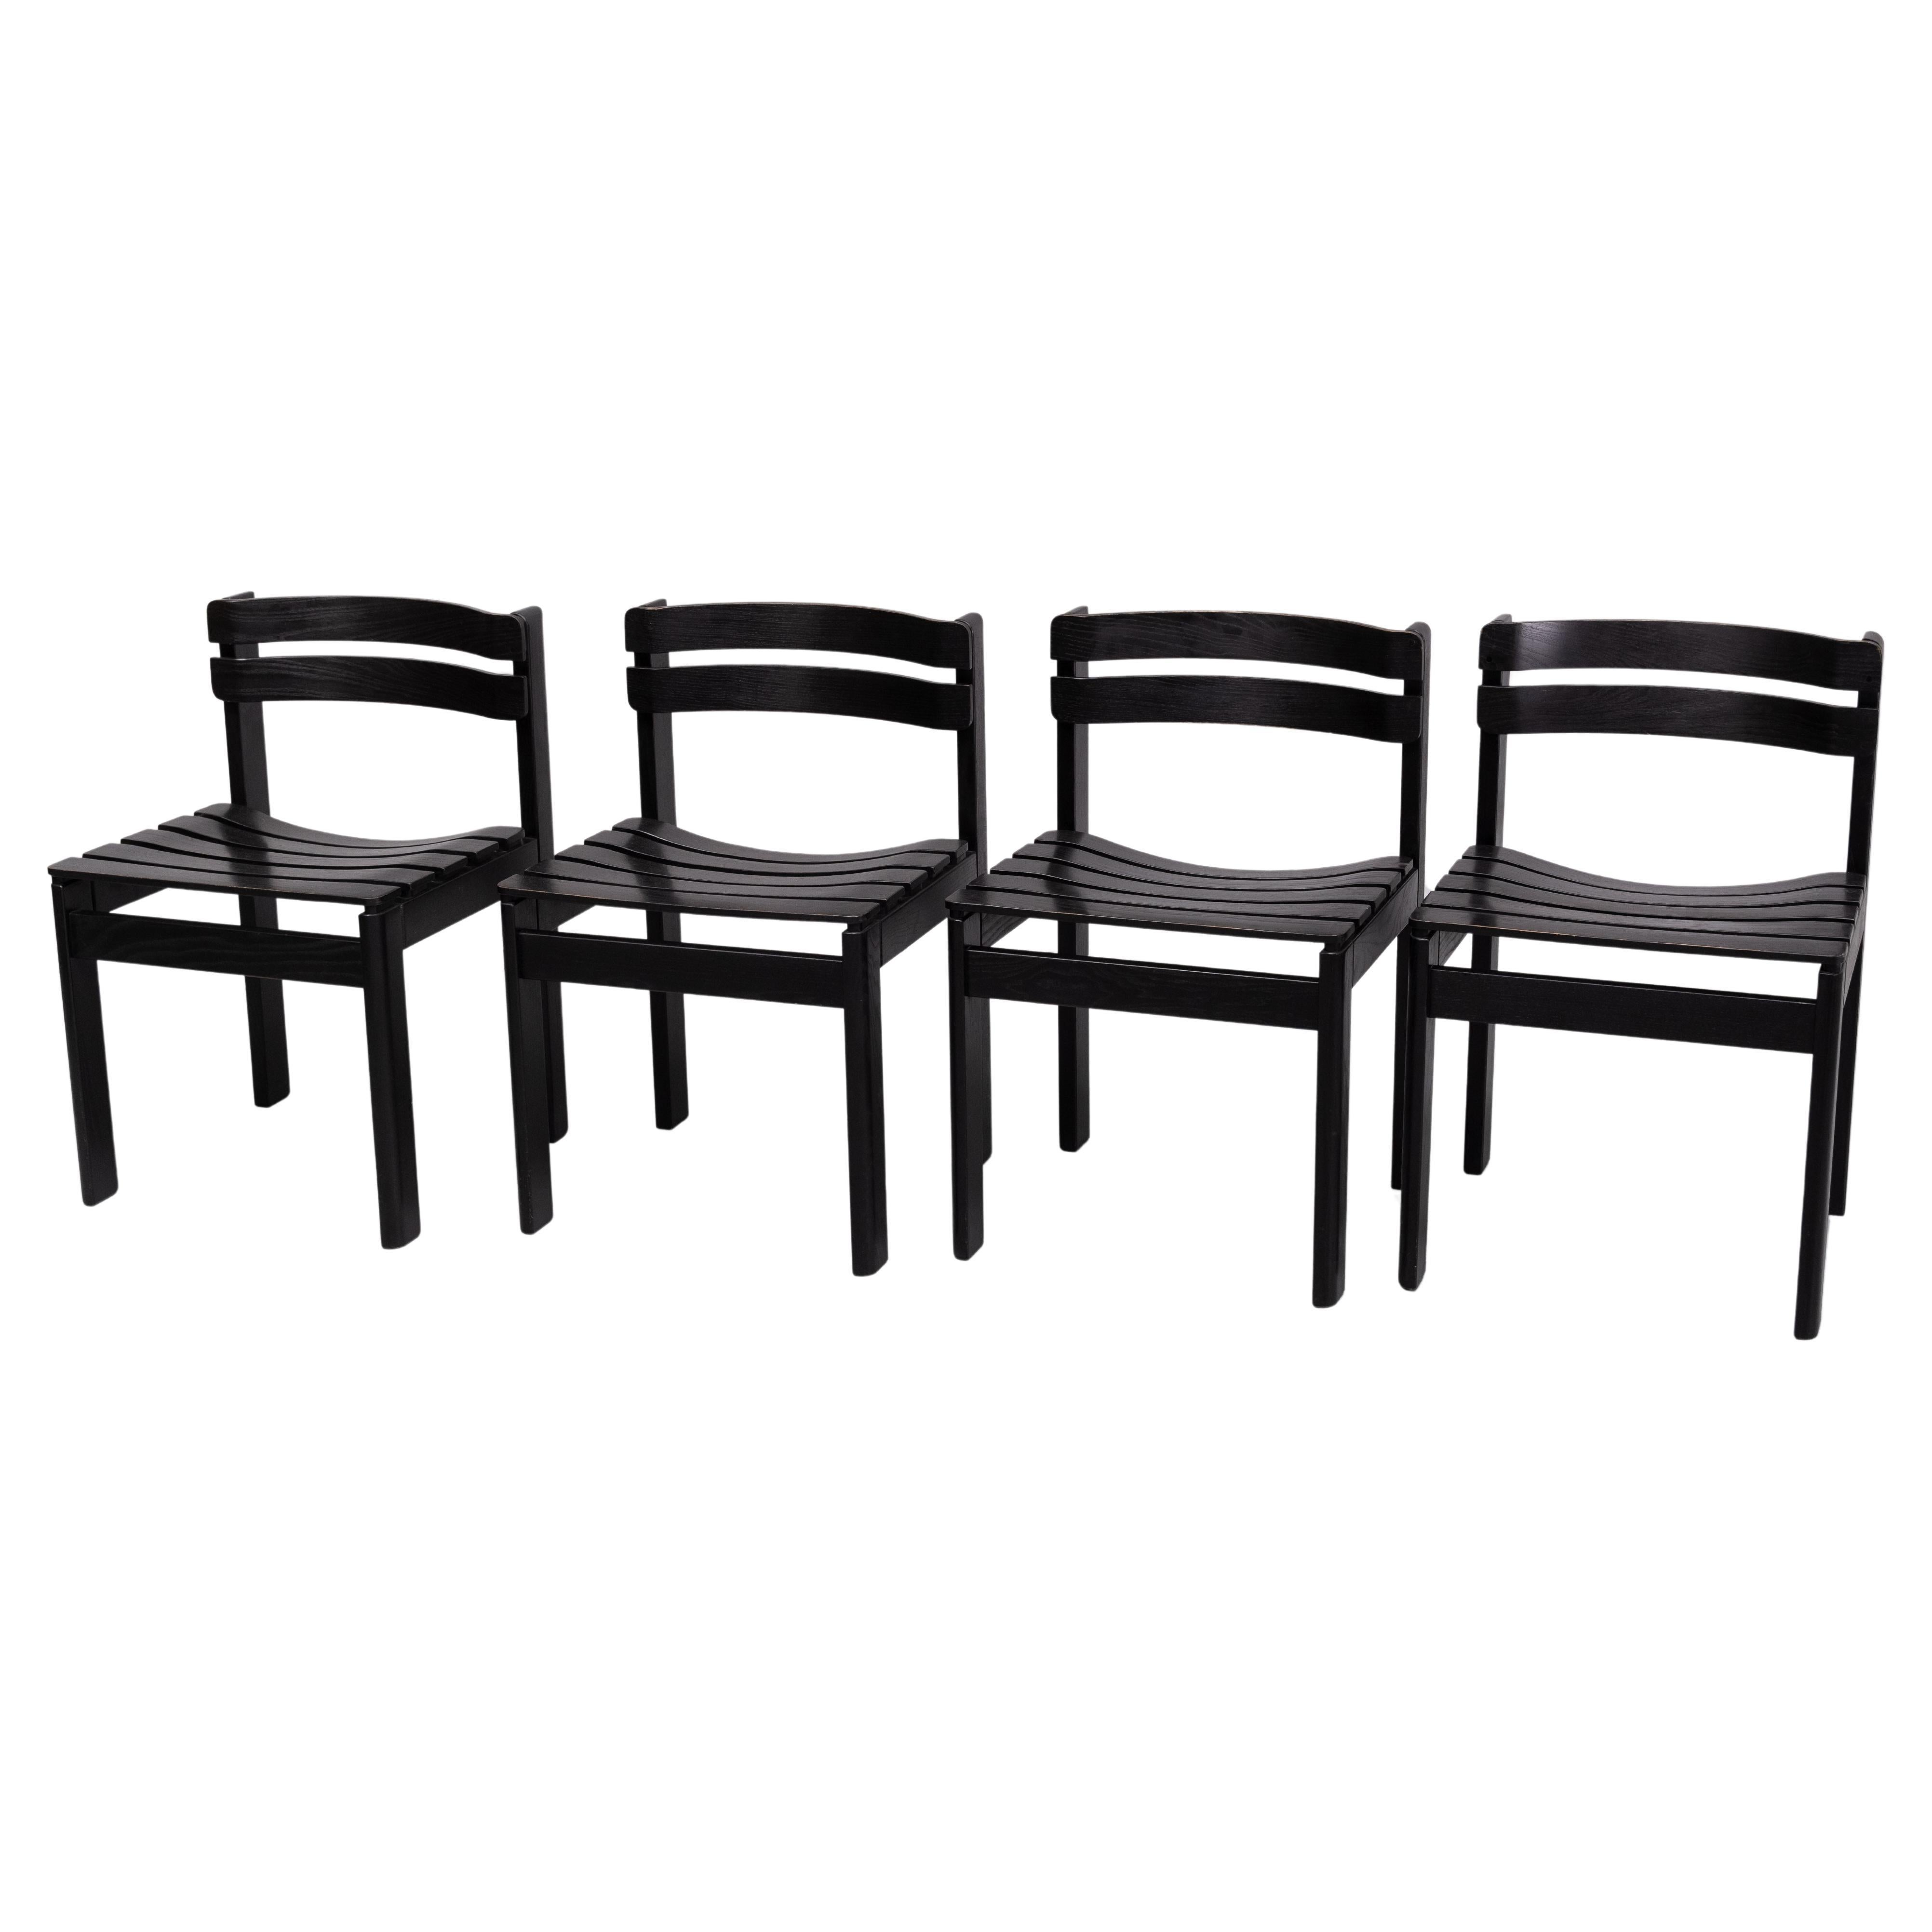 Les chaises ont une structure en bois de chêne massif peint en noir. Le design/One est particulièrement séduisant en raison de ses lattes incurvées, tant pour l'assise que pour le dossier. Les lattes du dossier sont positionnées en quelque sorte